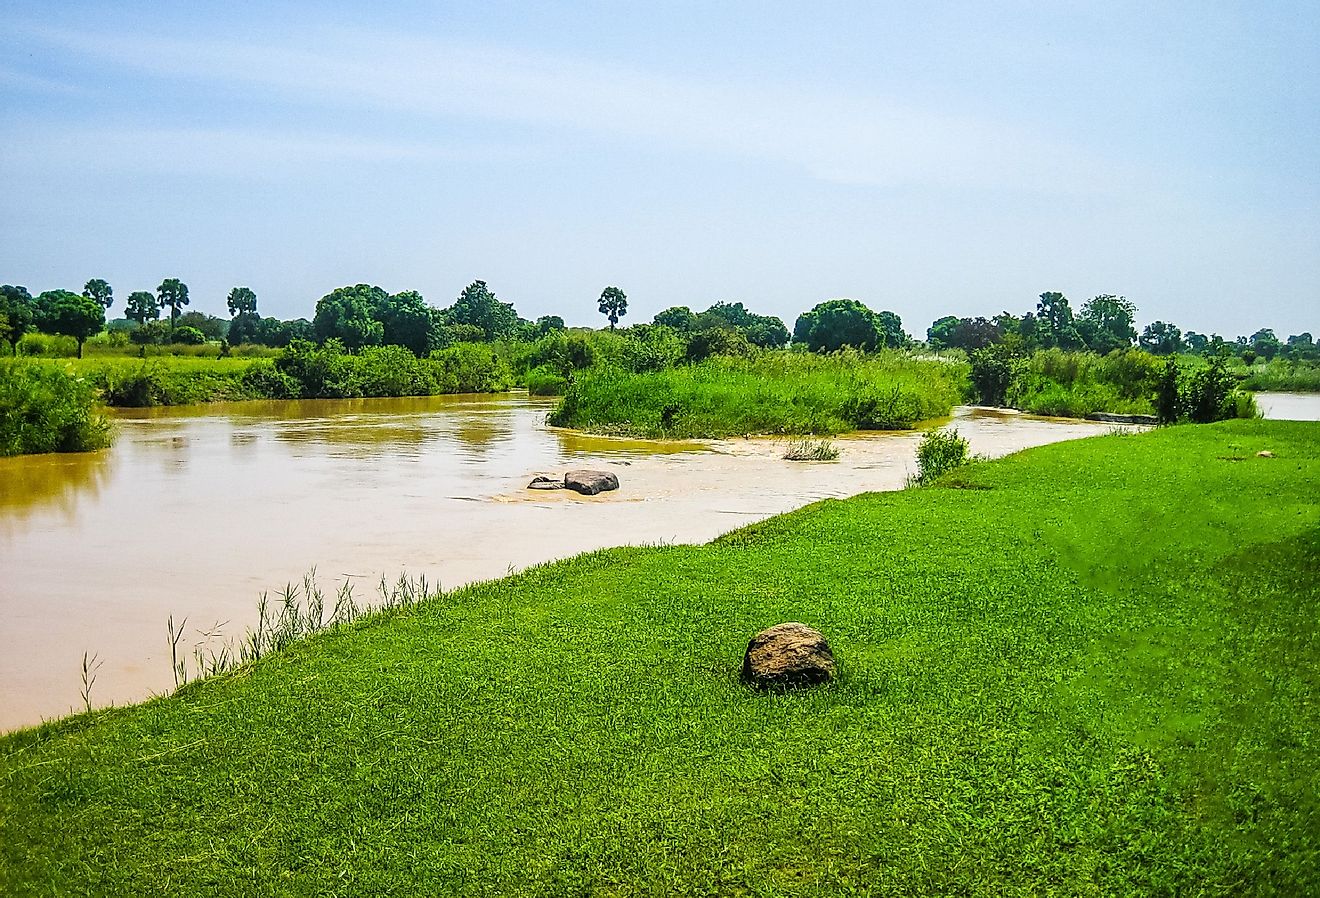 Kaduna River in Kaduna, Nigeria.